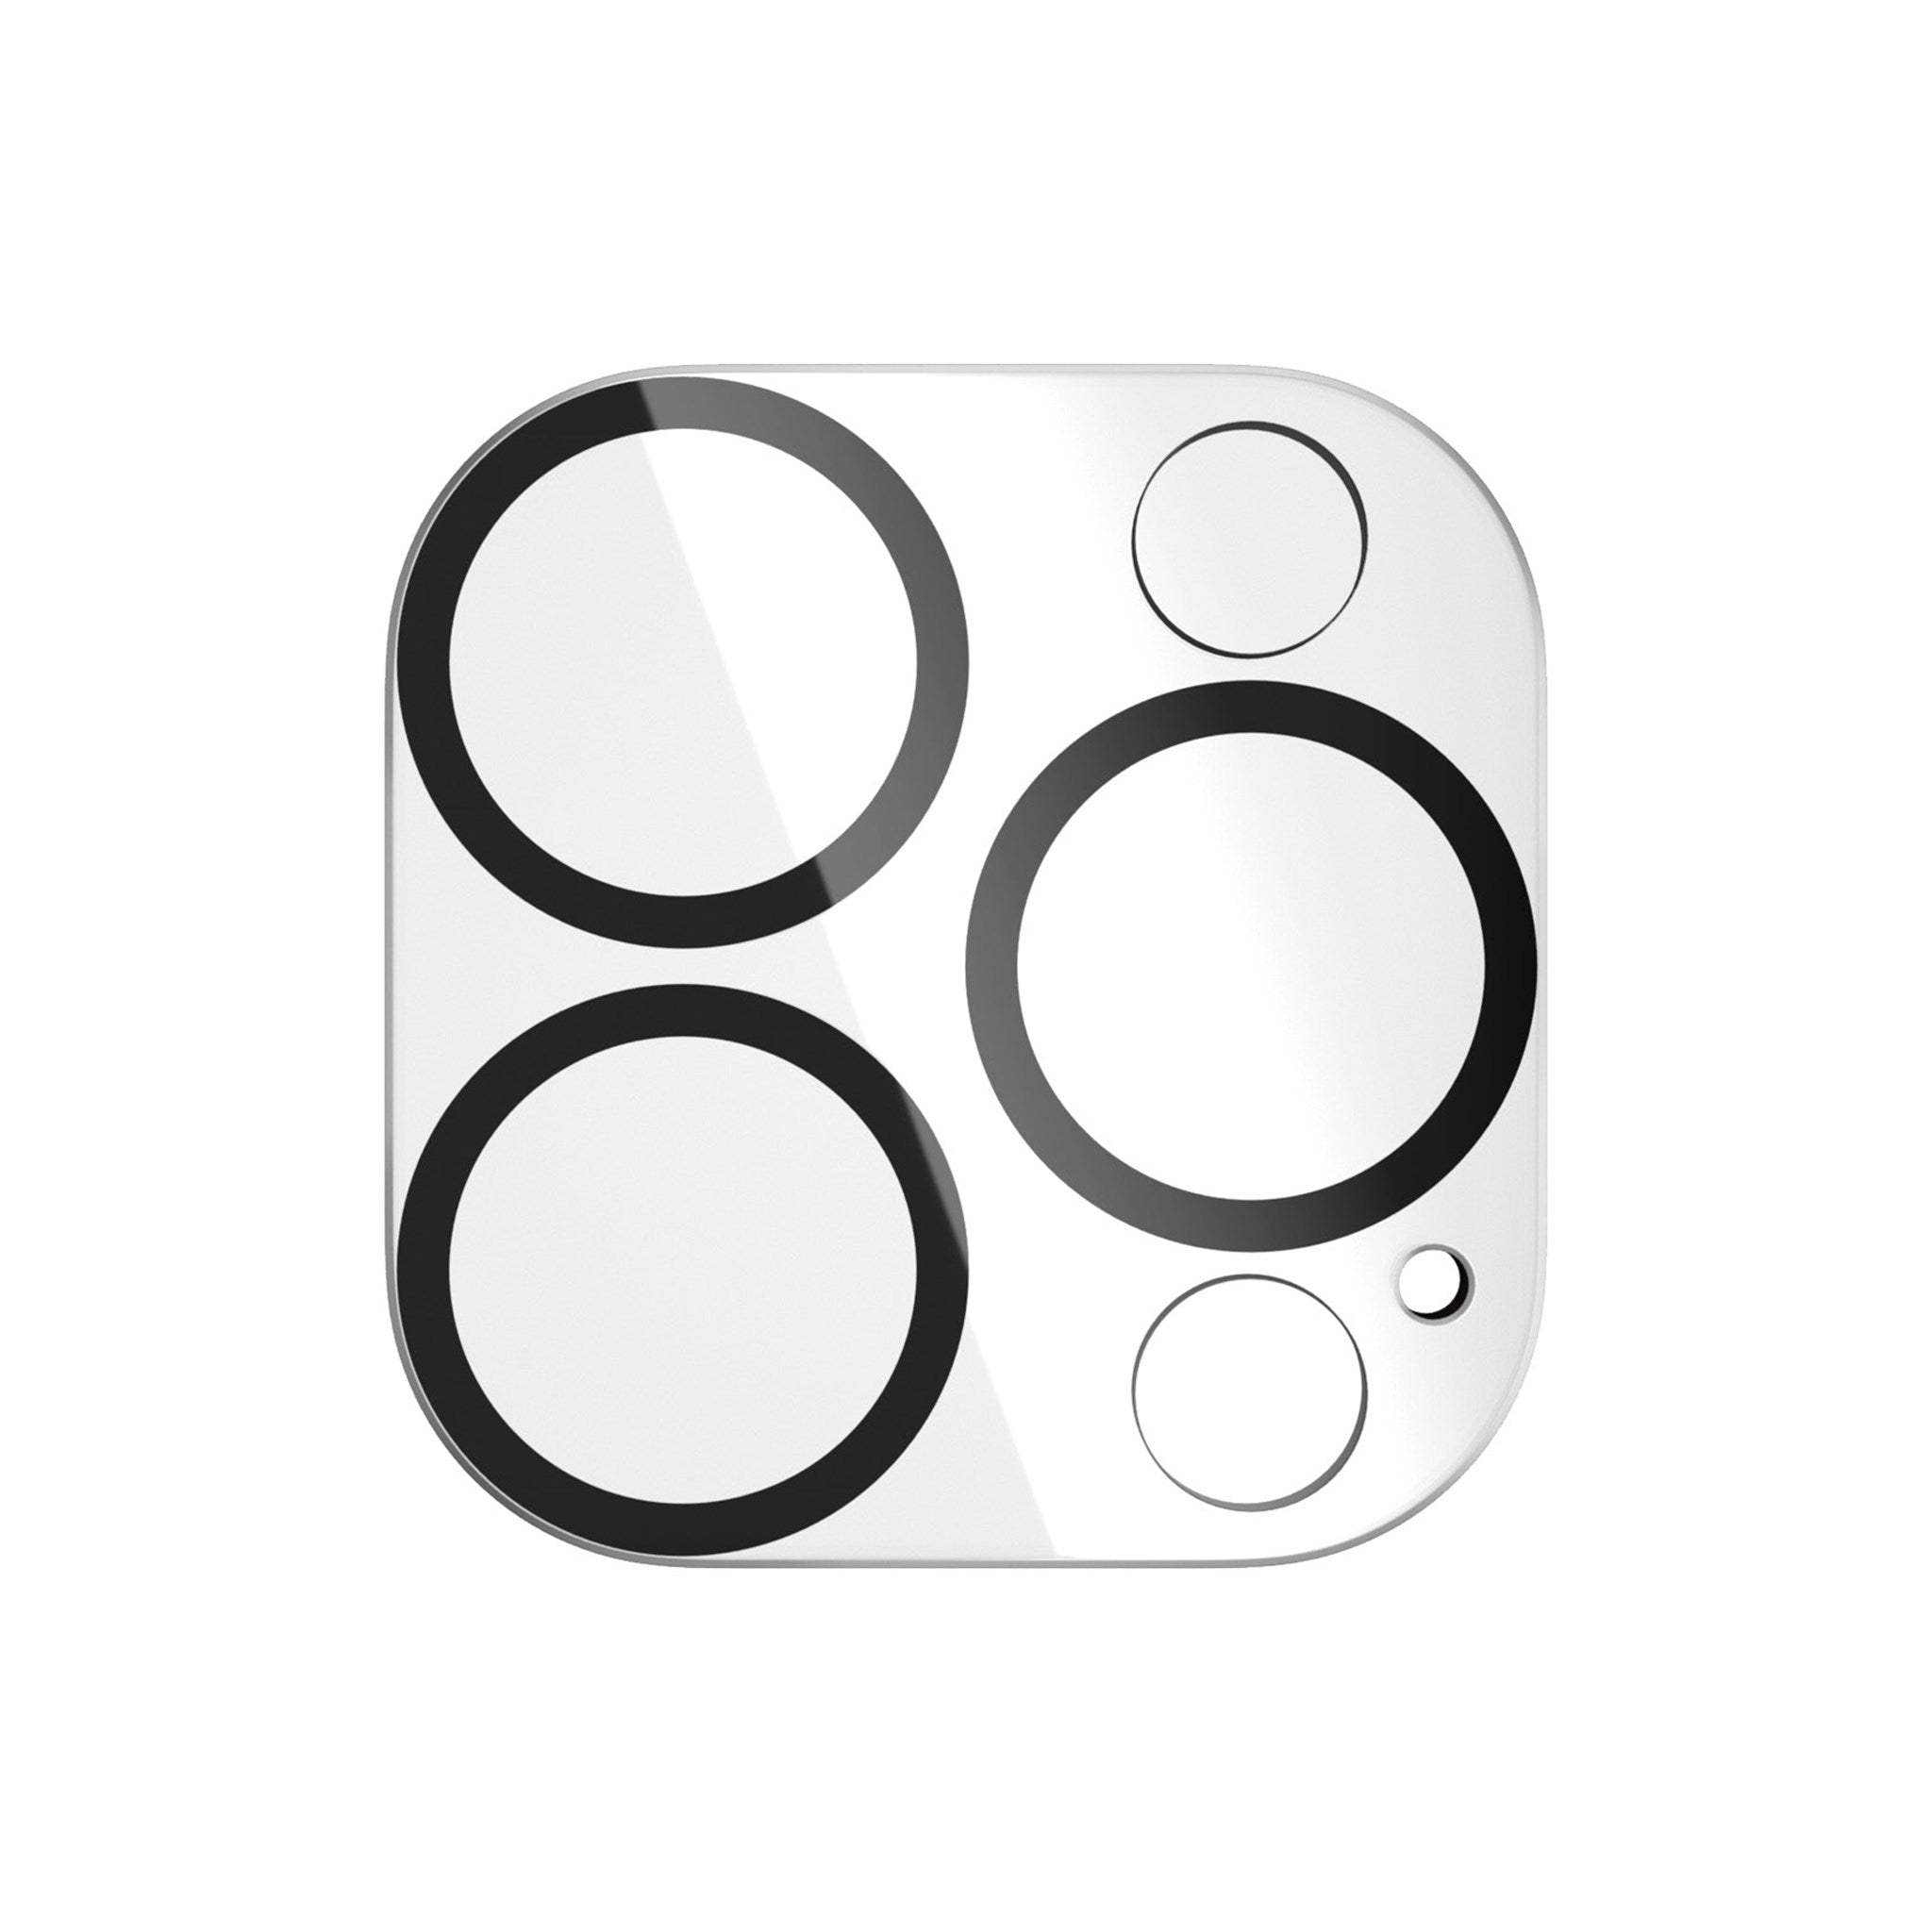 PANZERGLASS PicturePerfect Kameraschutz(für Max) 15 Pro iPhone | Pro 15 Apple